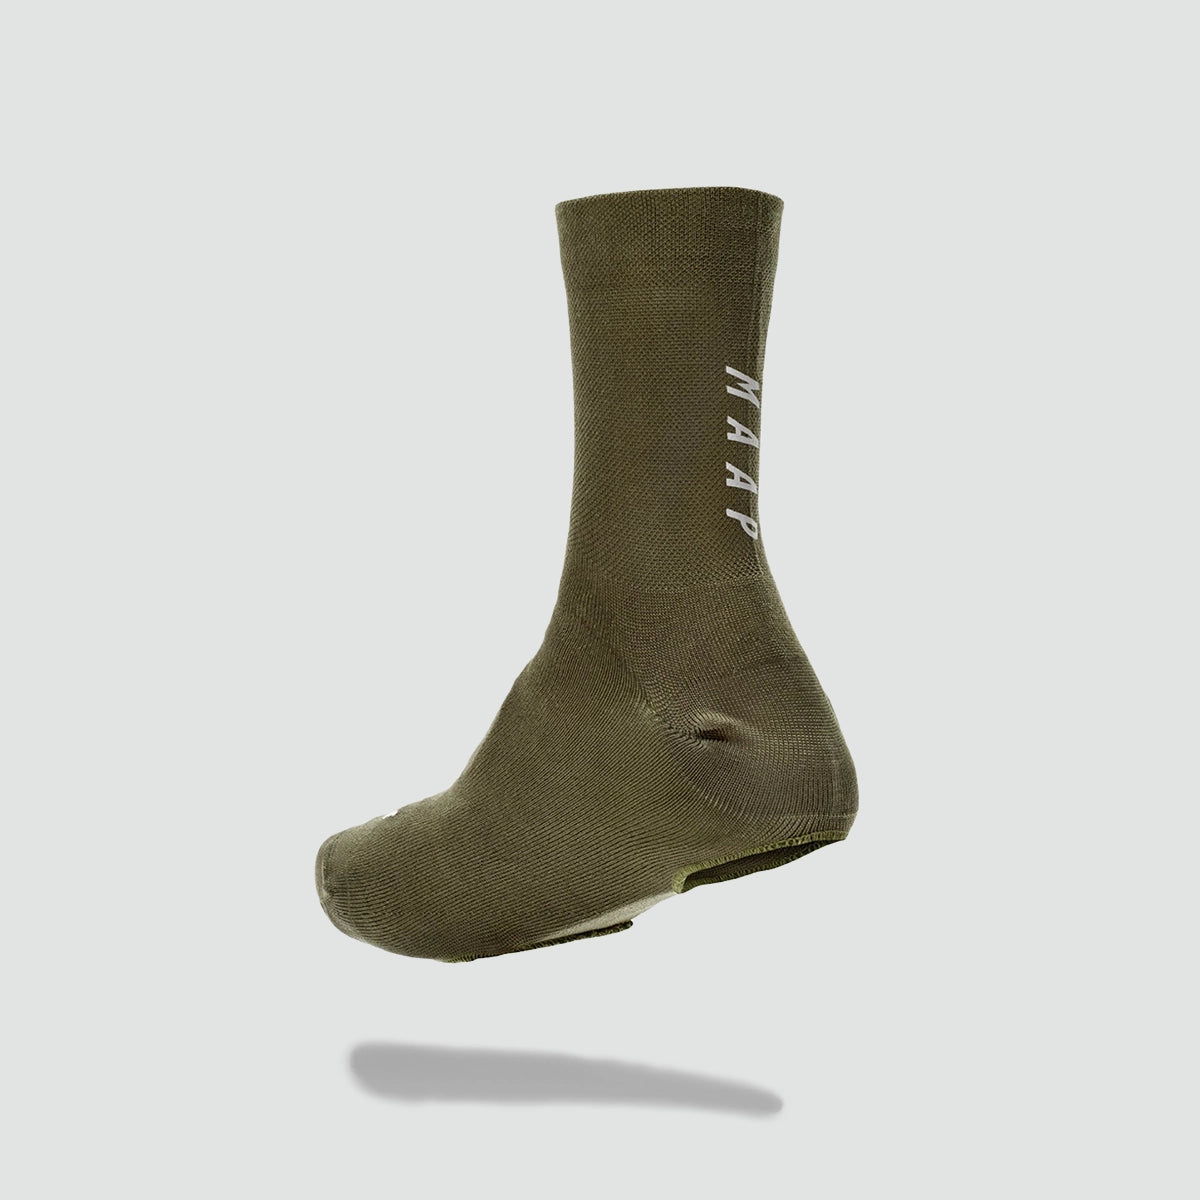 針織外套襪 - 橄欖色